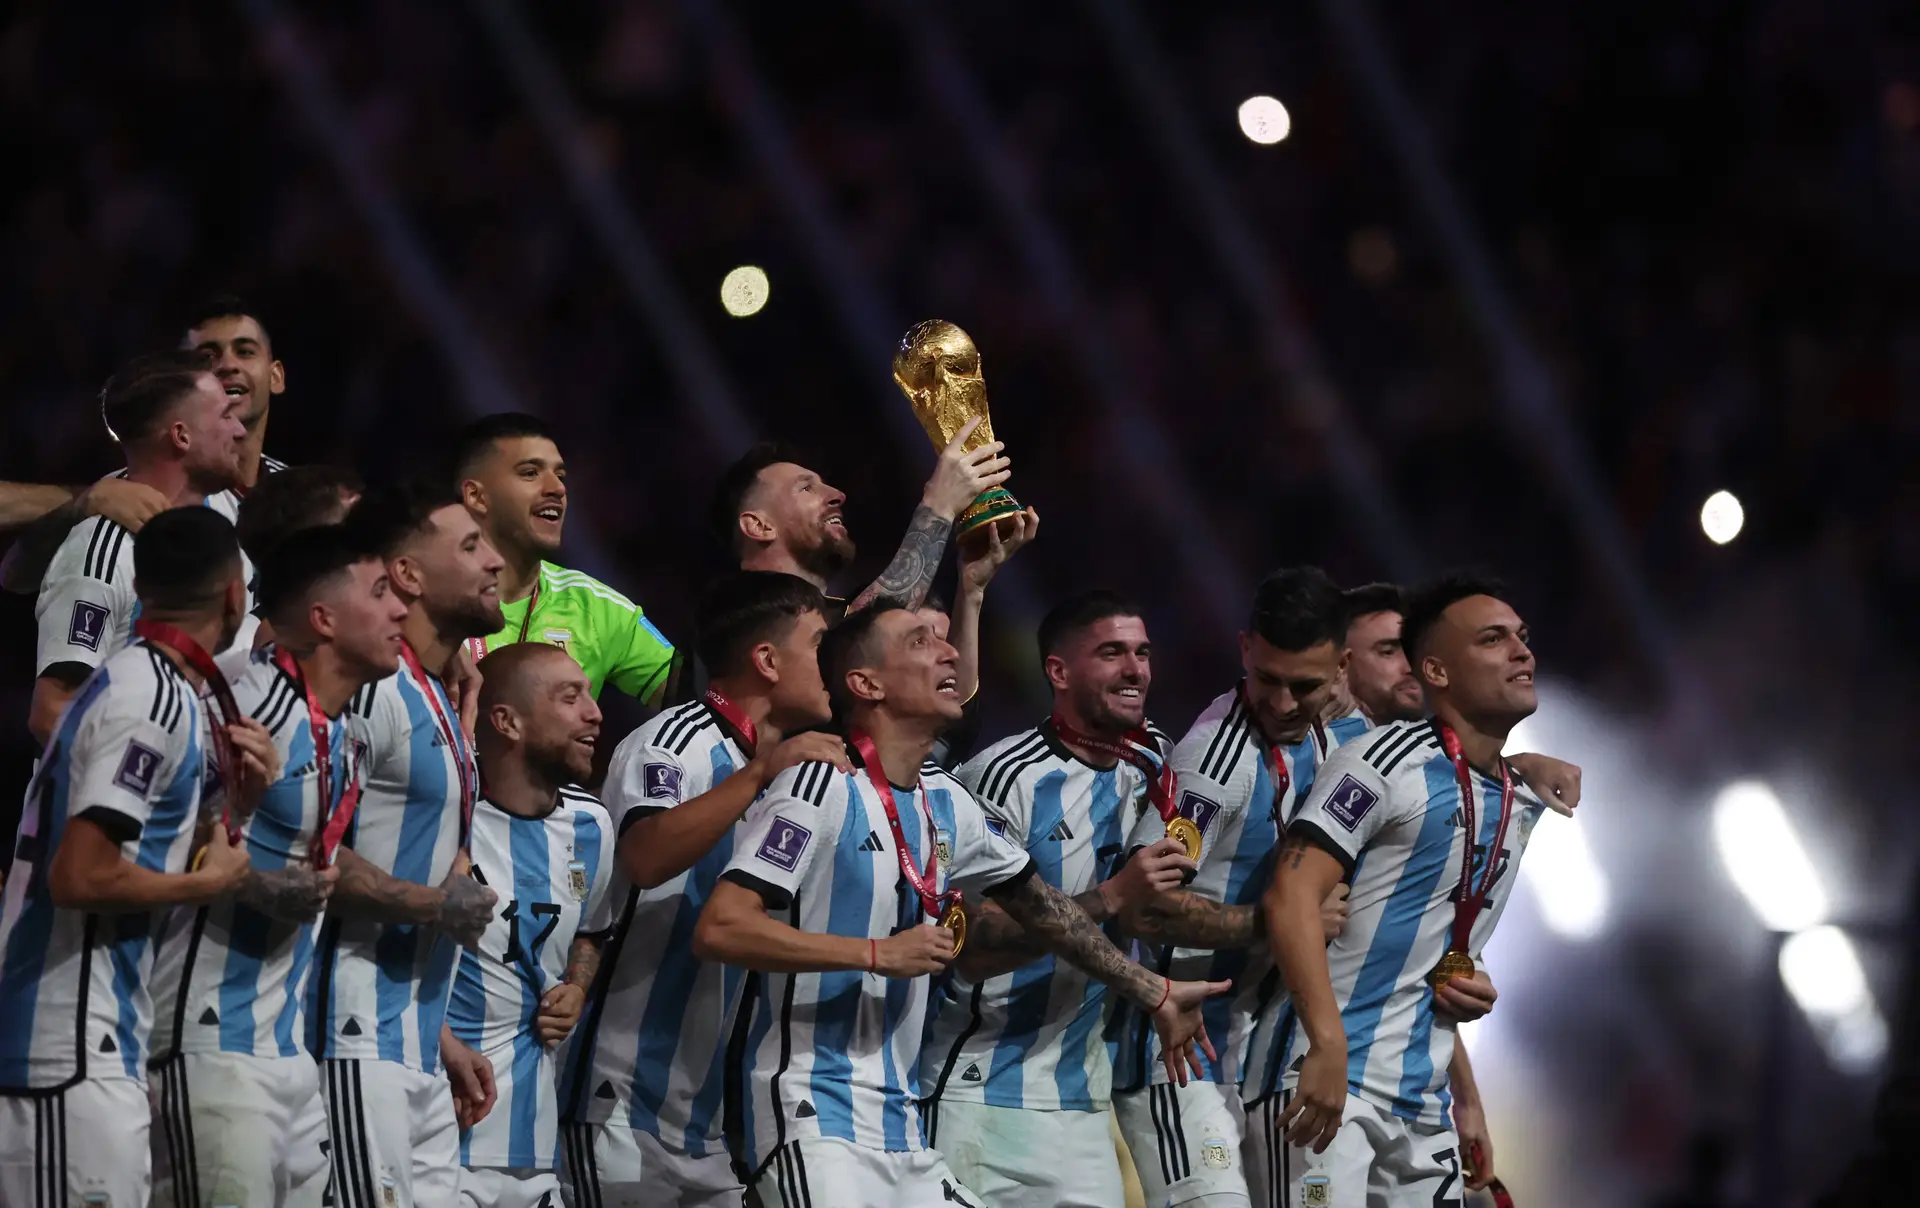 Campeã Argentina arrancou mal no Mundial, mas repete feito da Espanha em 2010